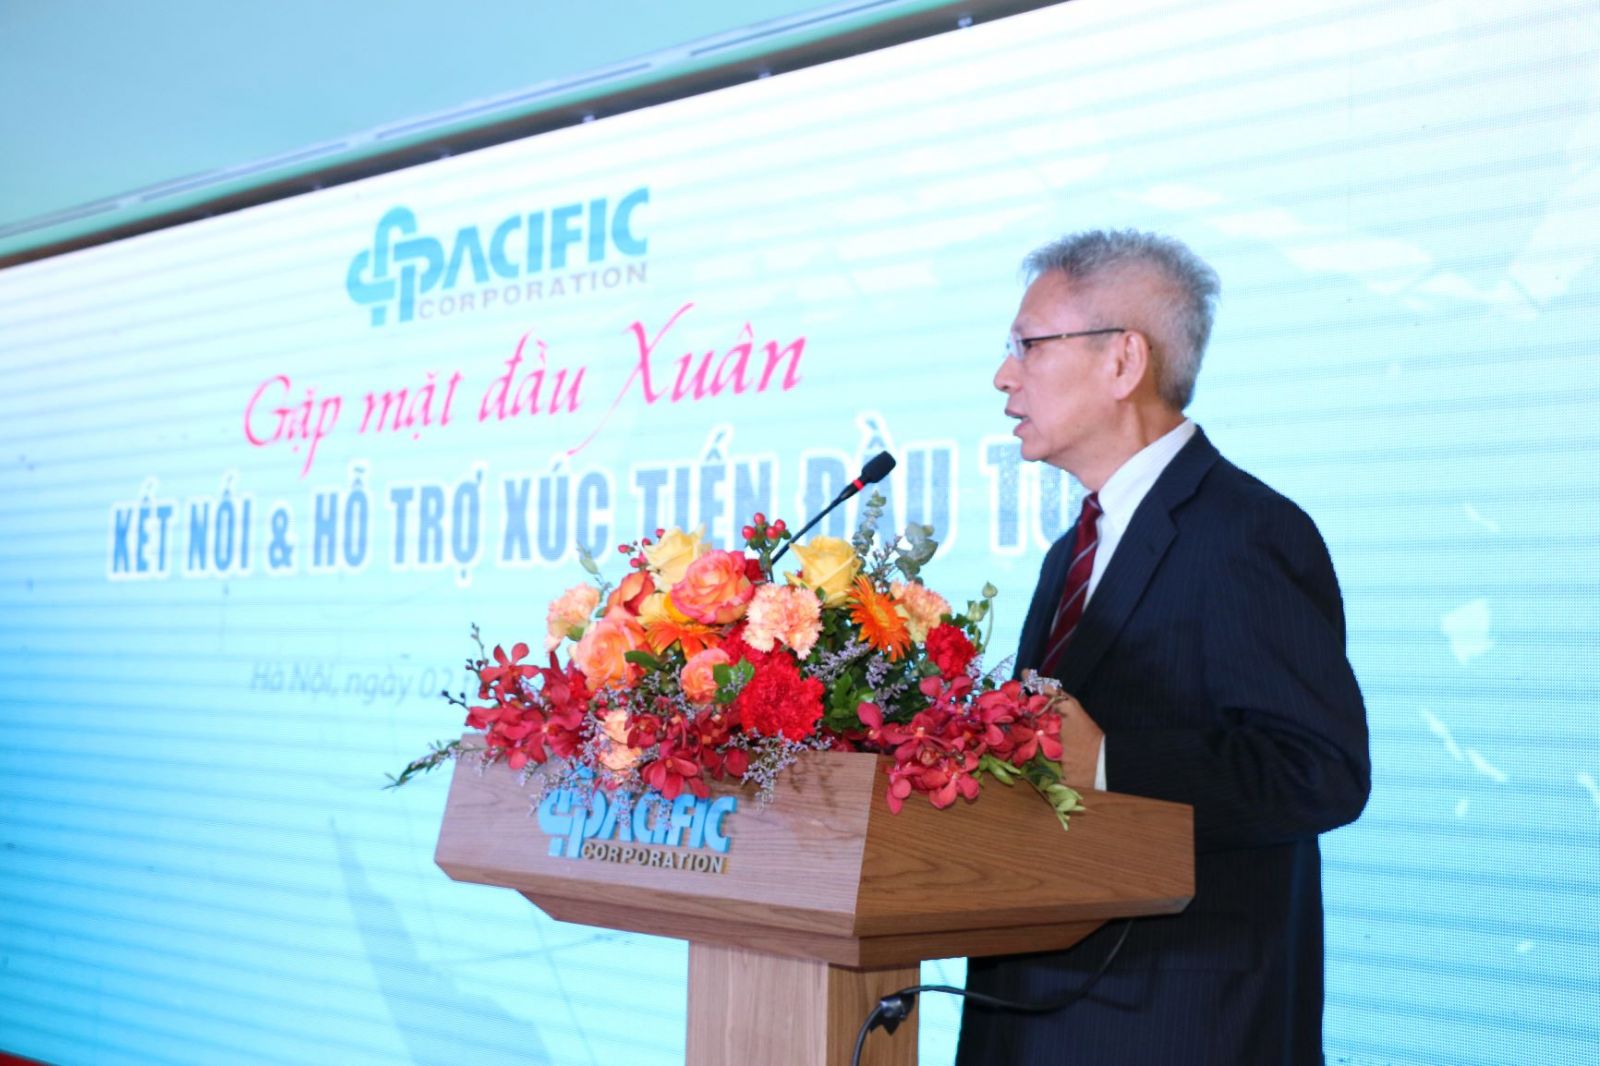 Ông Nguyễn Sĩ Dũng, Cố vấn Chương trình Kết nối và hỗ trợ xúc tiến đầu tư đánh giá cao về sự khác biệt, độc đáo của Chương trình này trong việc mở ra một hướng tiếp cận mới thu hút FDI tại Việt Nam